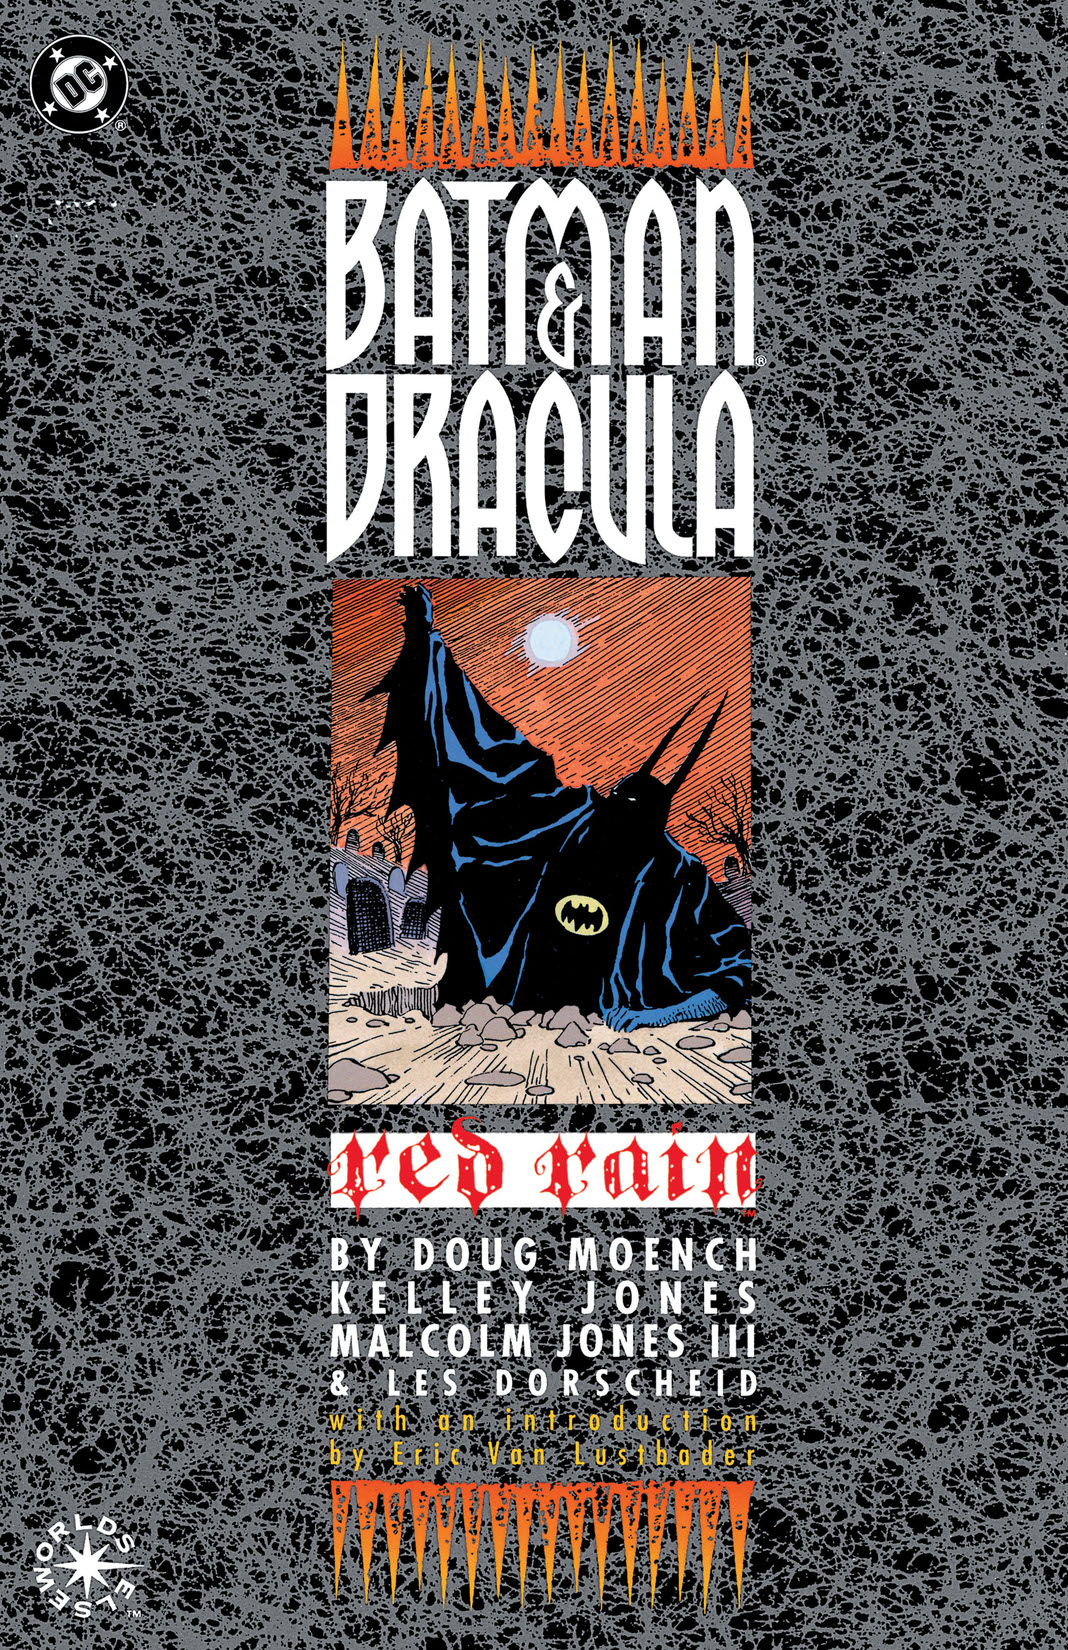 Batman & Dracula: Red Rain #1 preview images